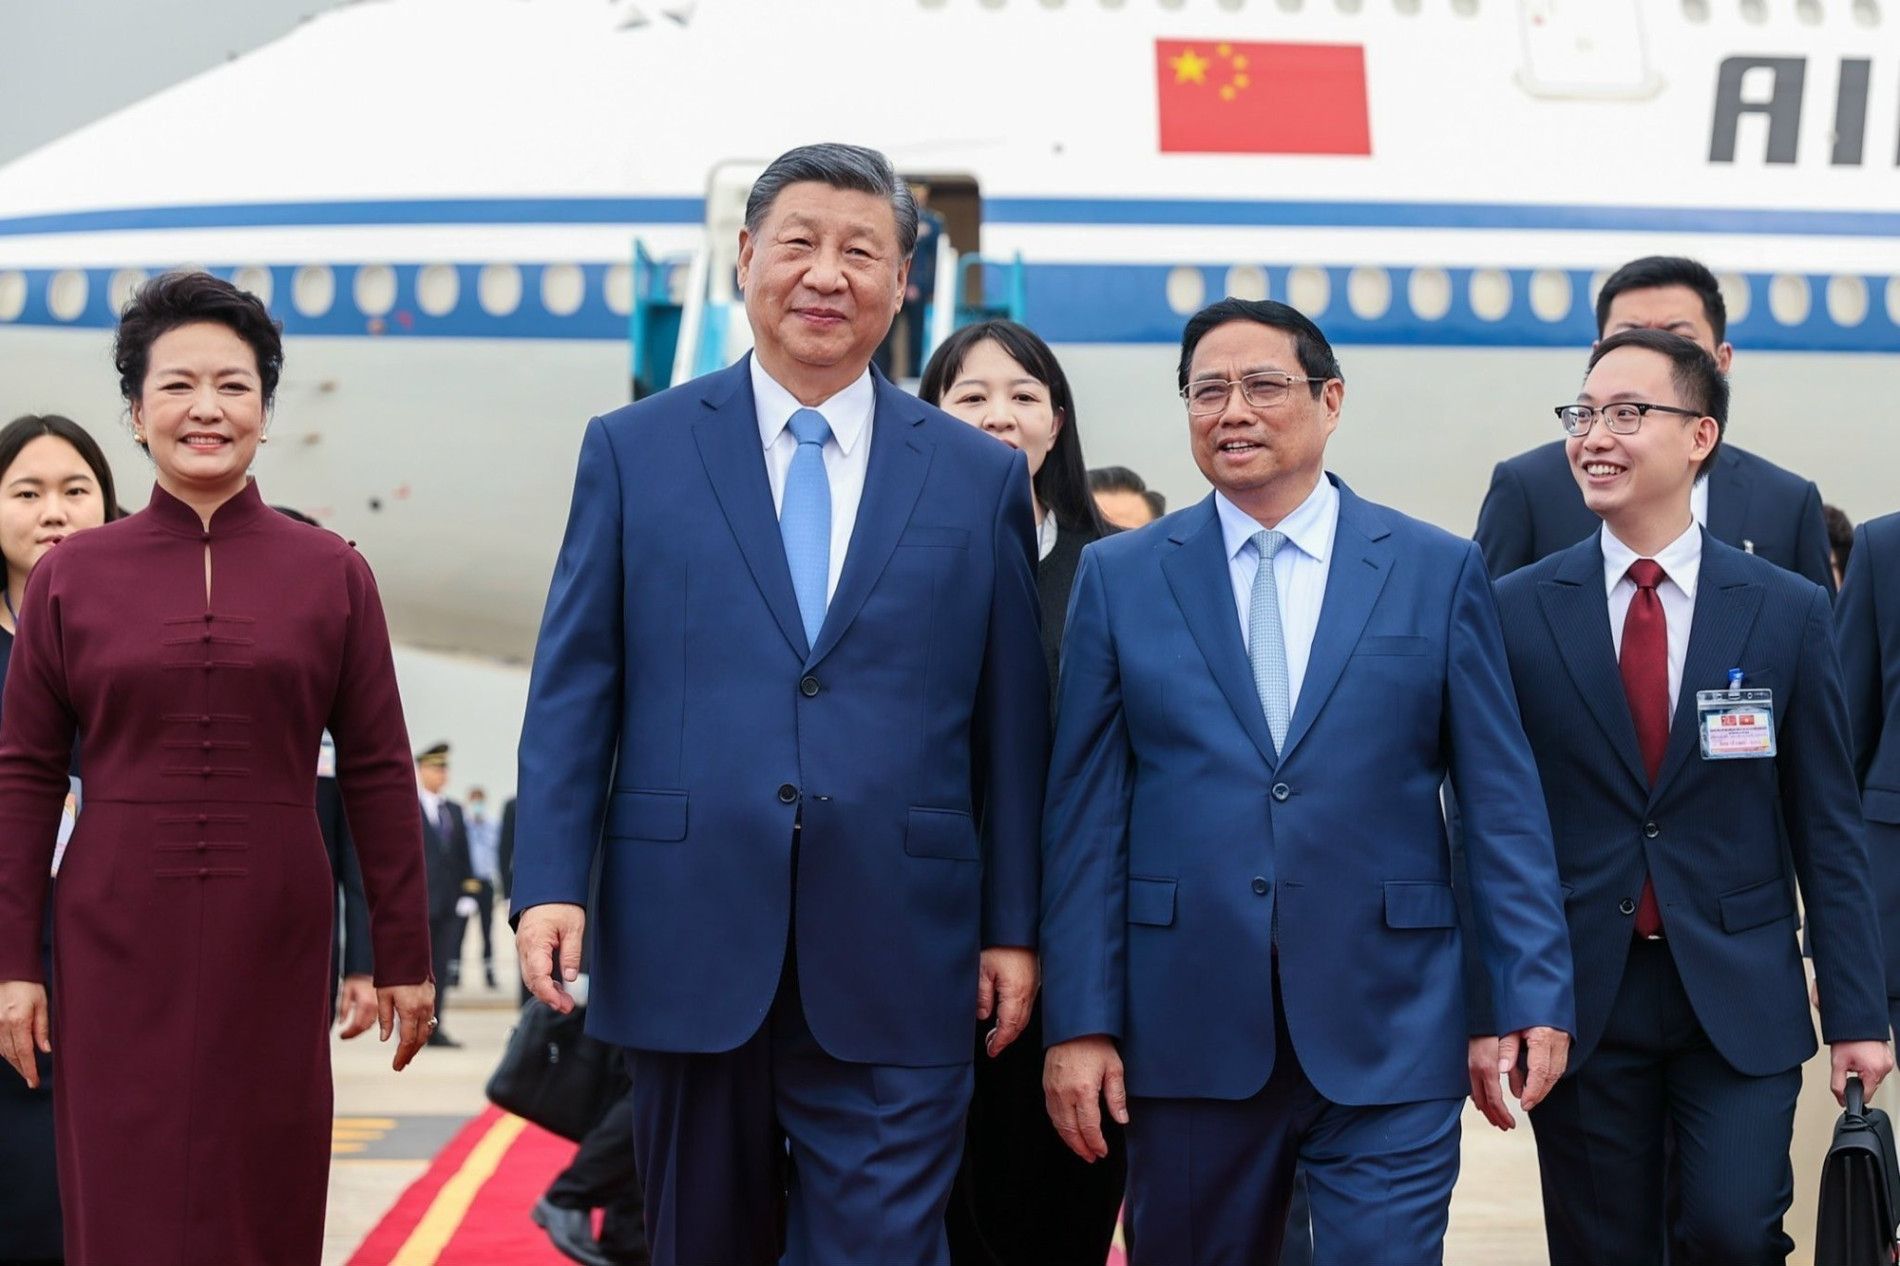 Tổng Bí thư, Chủ tịch nước Trung Quốc Tập Cận Bình đến Hà Nội, bắt đầu chuyến thăm Việt Nam - Ảnh 5.